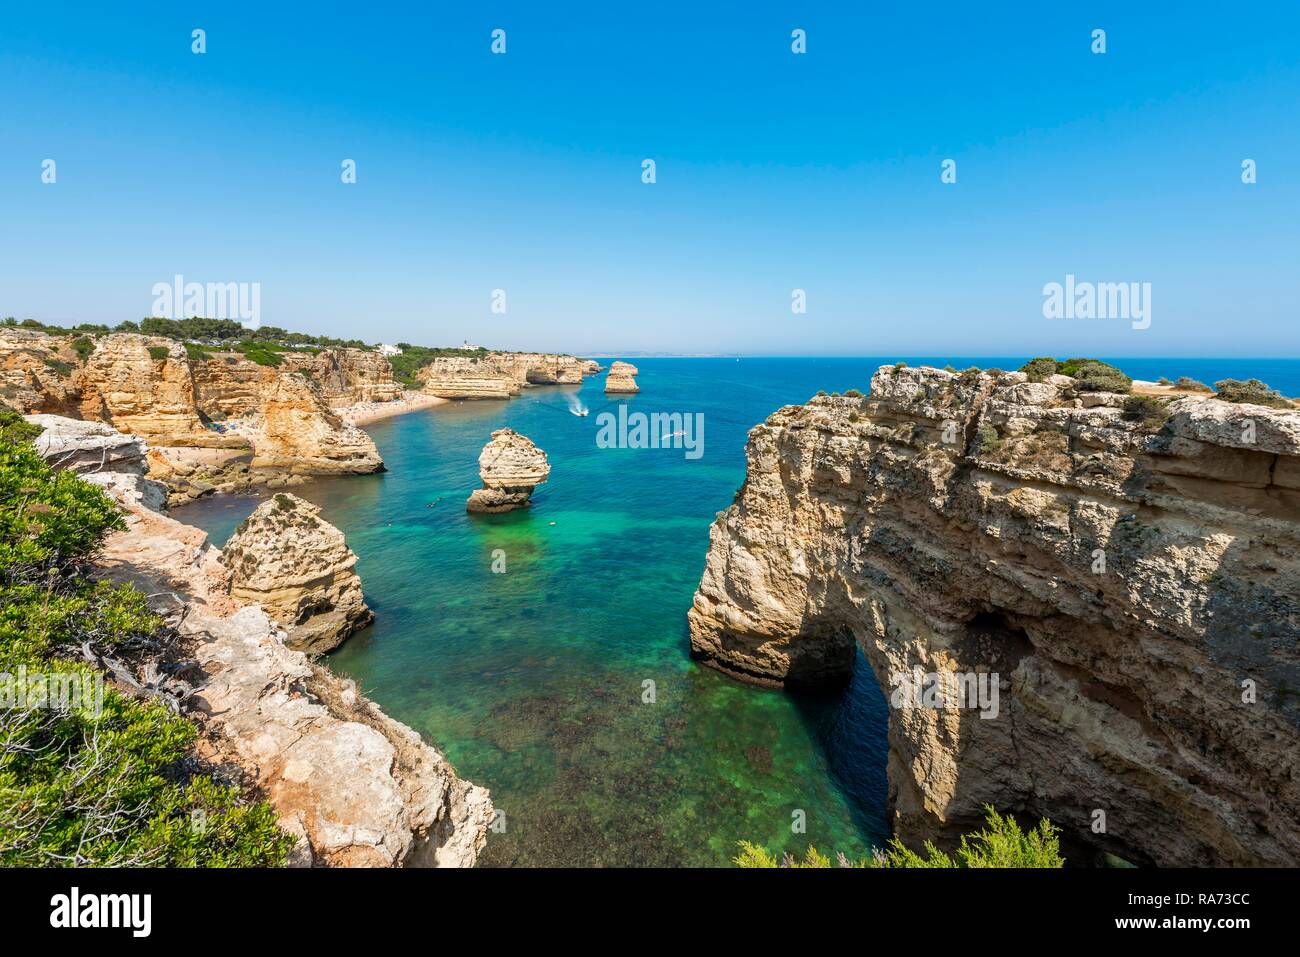 Türkisblaues Meer, Praia da Marinha Strand, Schroffe Felsenküste von Sandstein, Felsformationen im Meer, Algarve, Lagos, Portugal Stockfoto